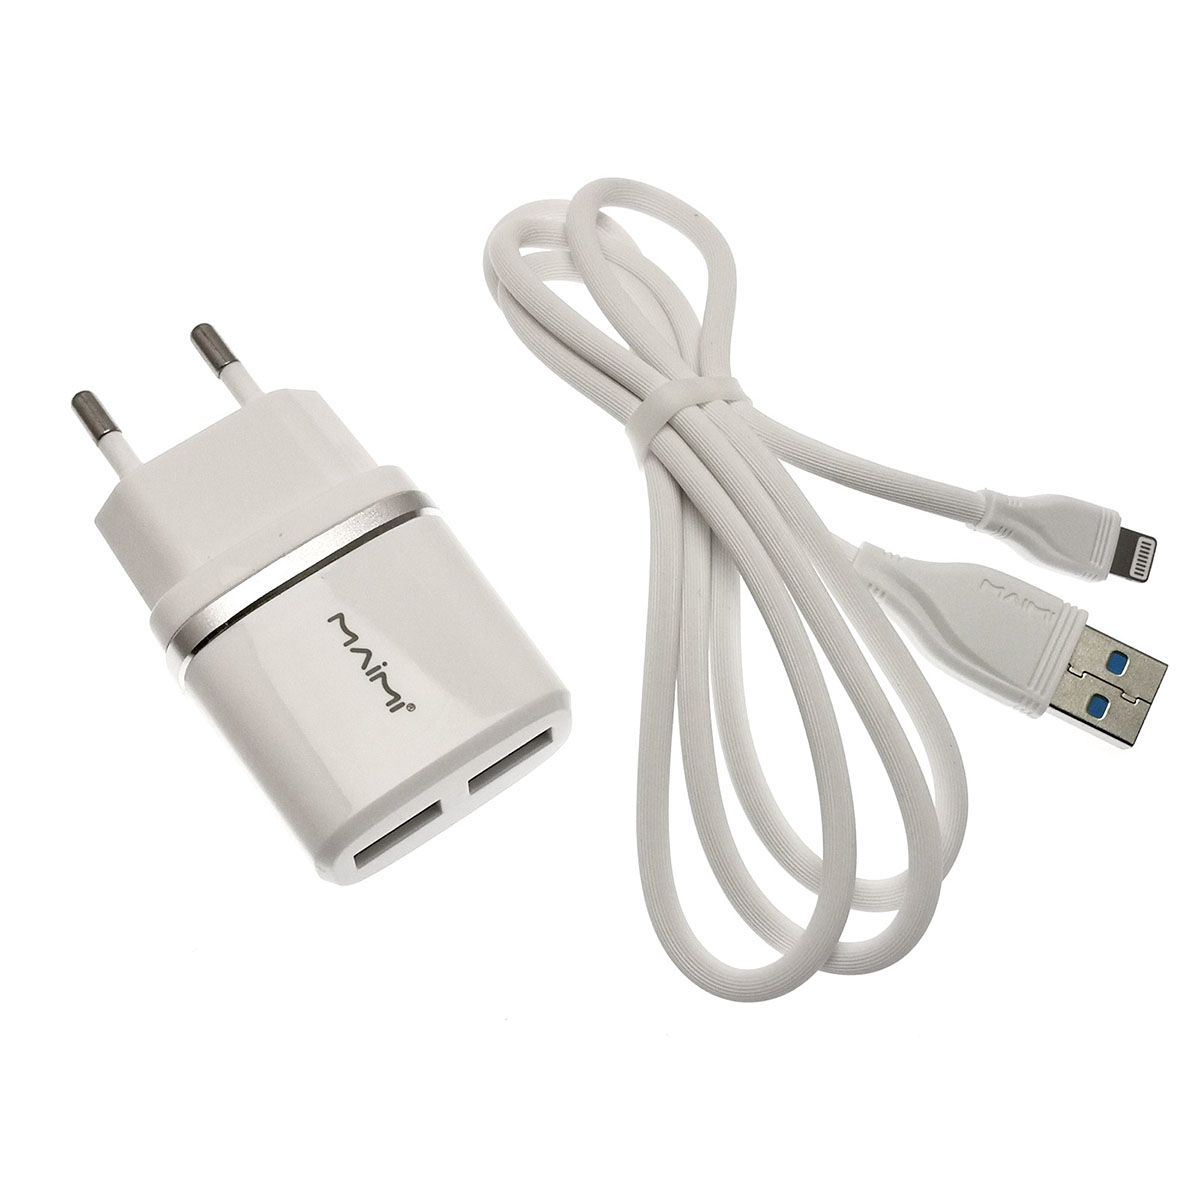 СЗУ (сетевое зарядное устройство) MAIMI T28, 2 USB порт 5V-2.4A + кабель APPLE Lightning 8-pin, цвет белый